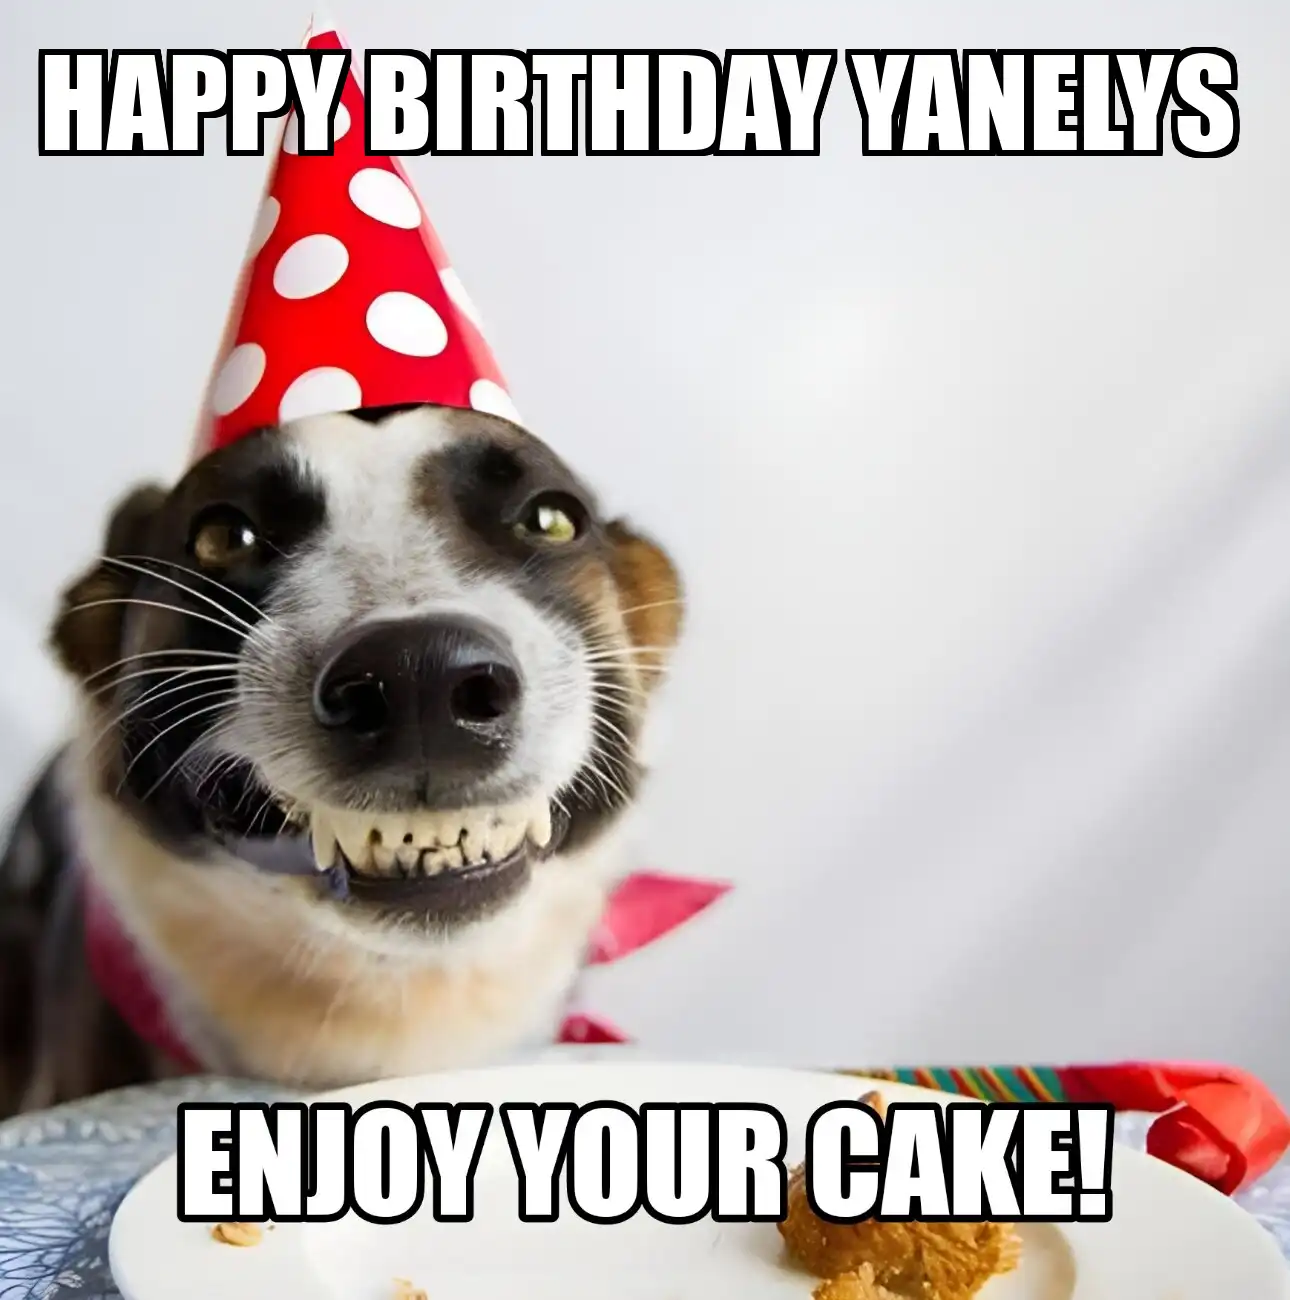 Happy Birthday Yanelys Enjoy Your Cake Dog Meme